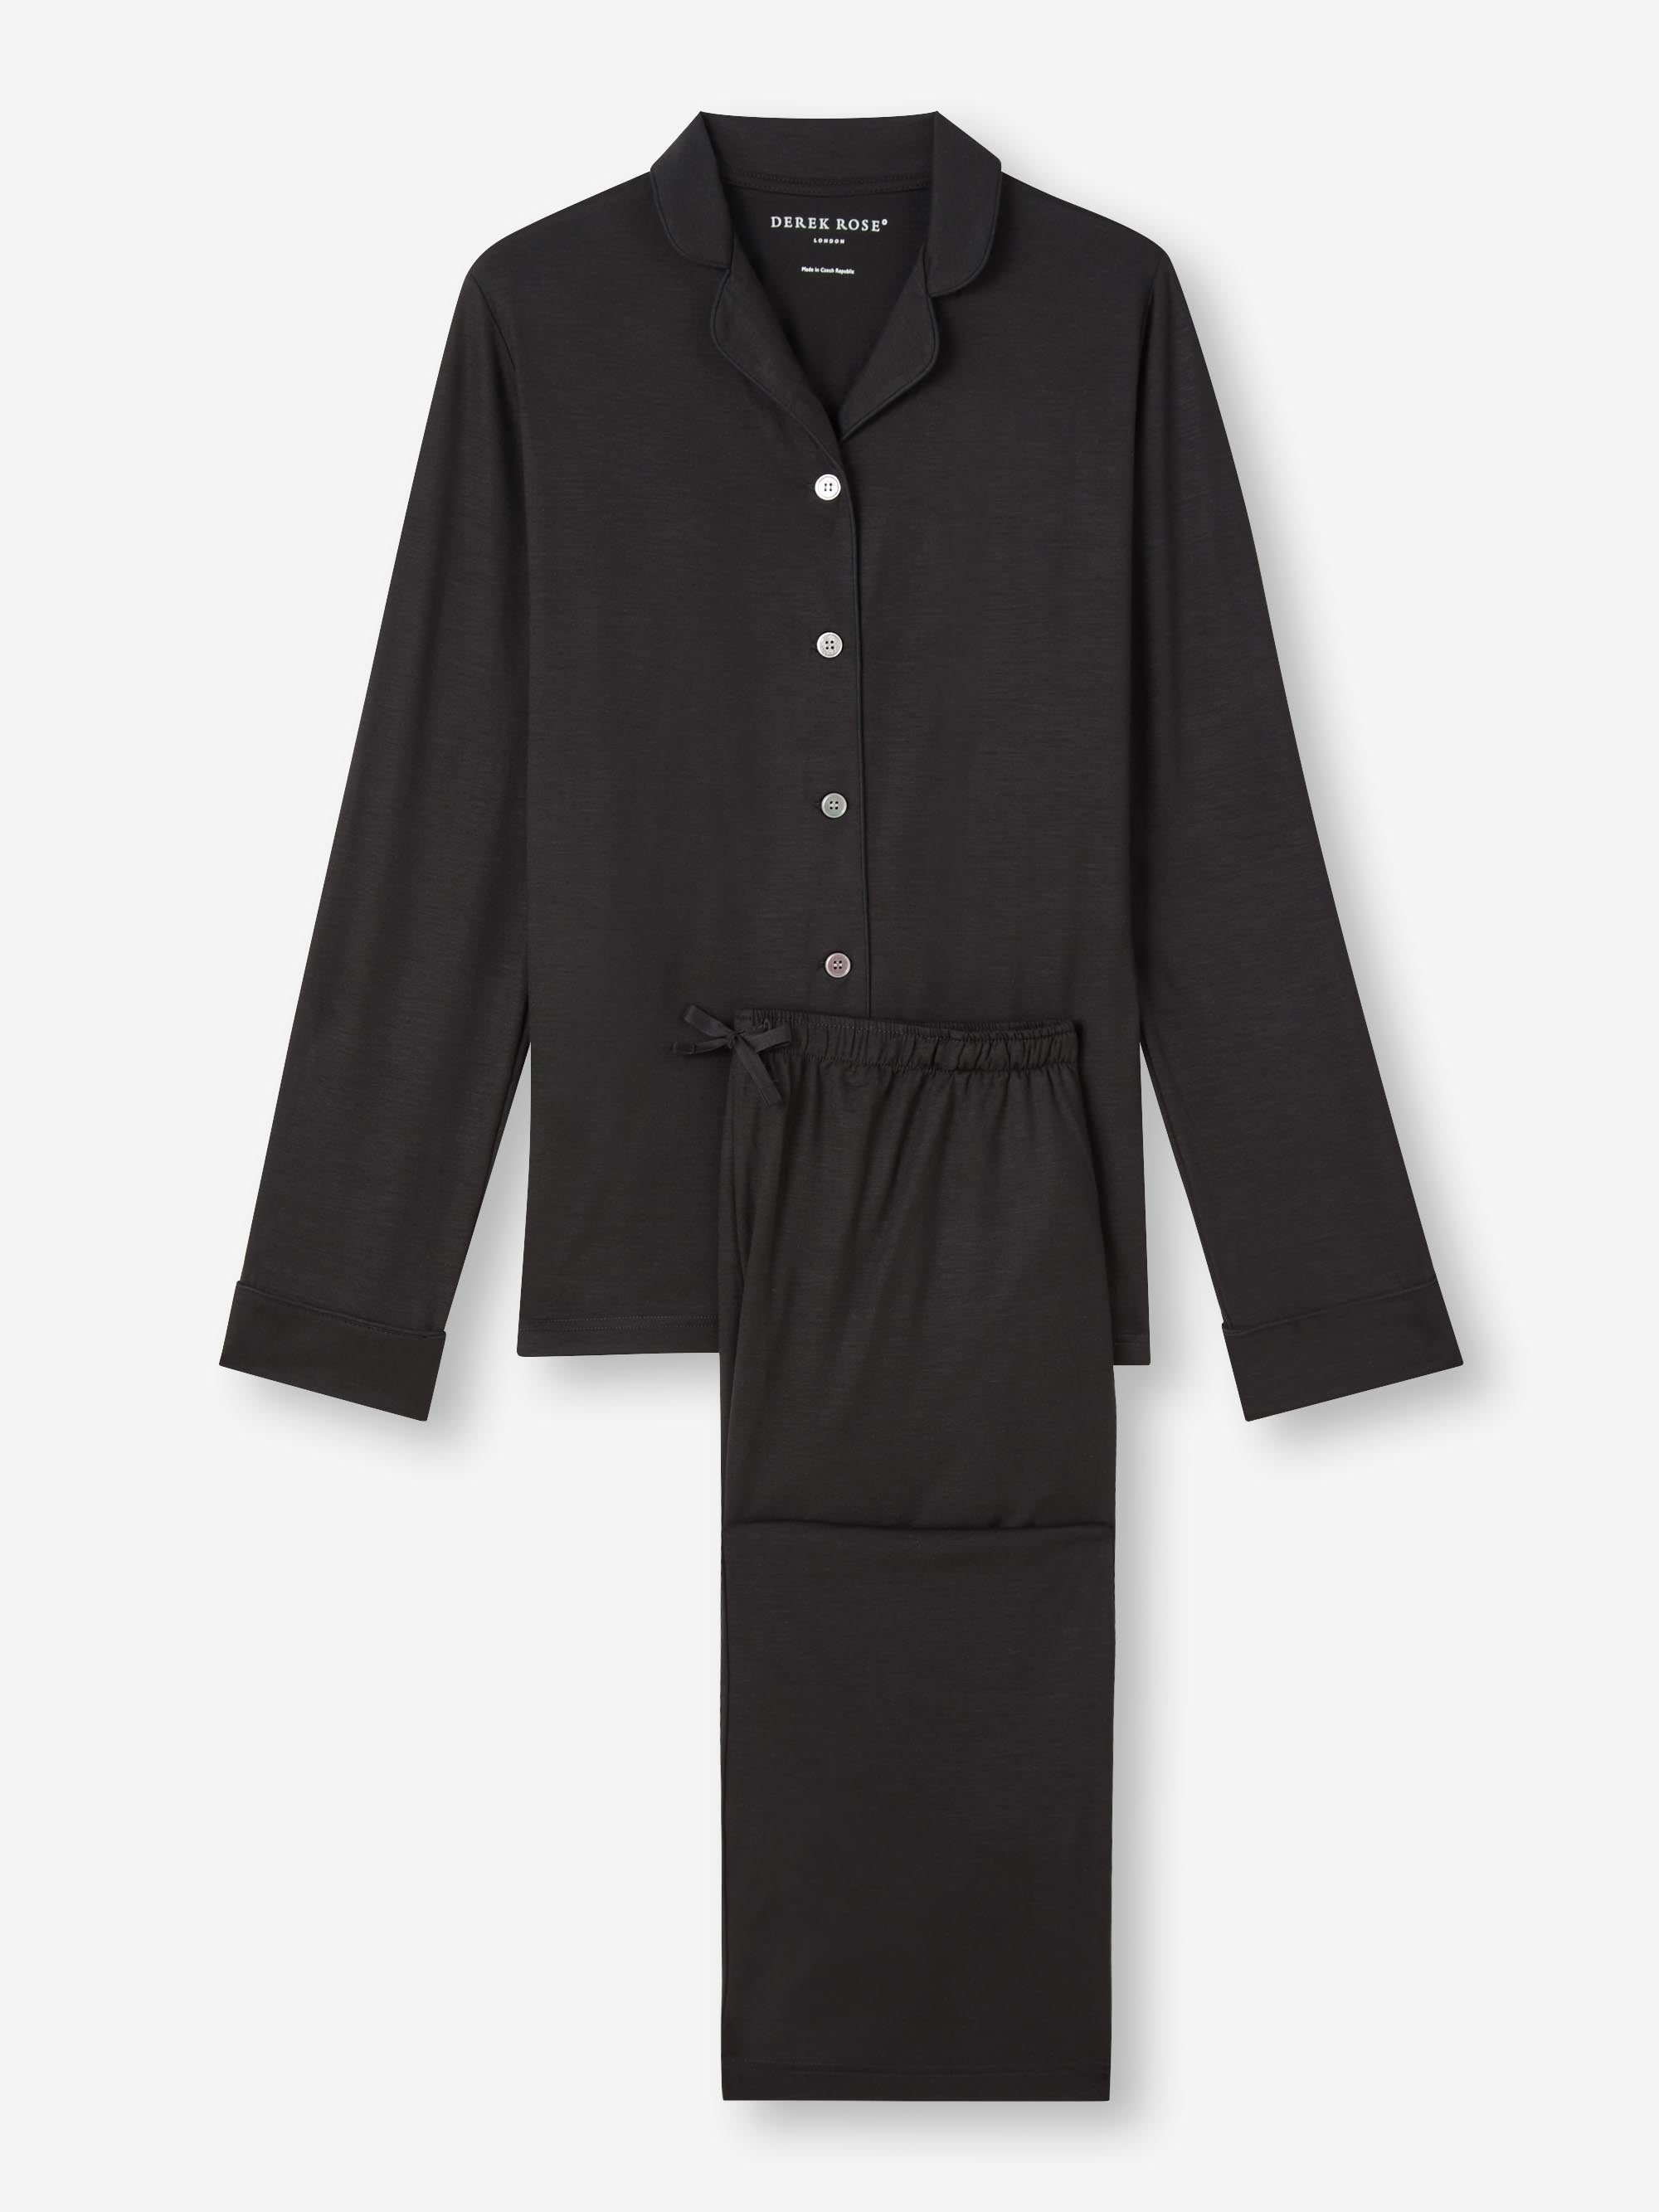 Women's Pyjamas Lara Micro Modal Stretch Black